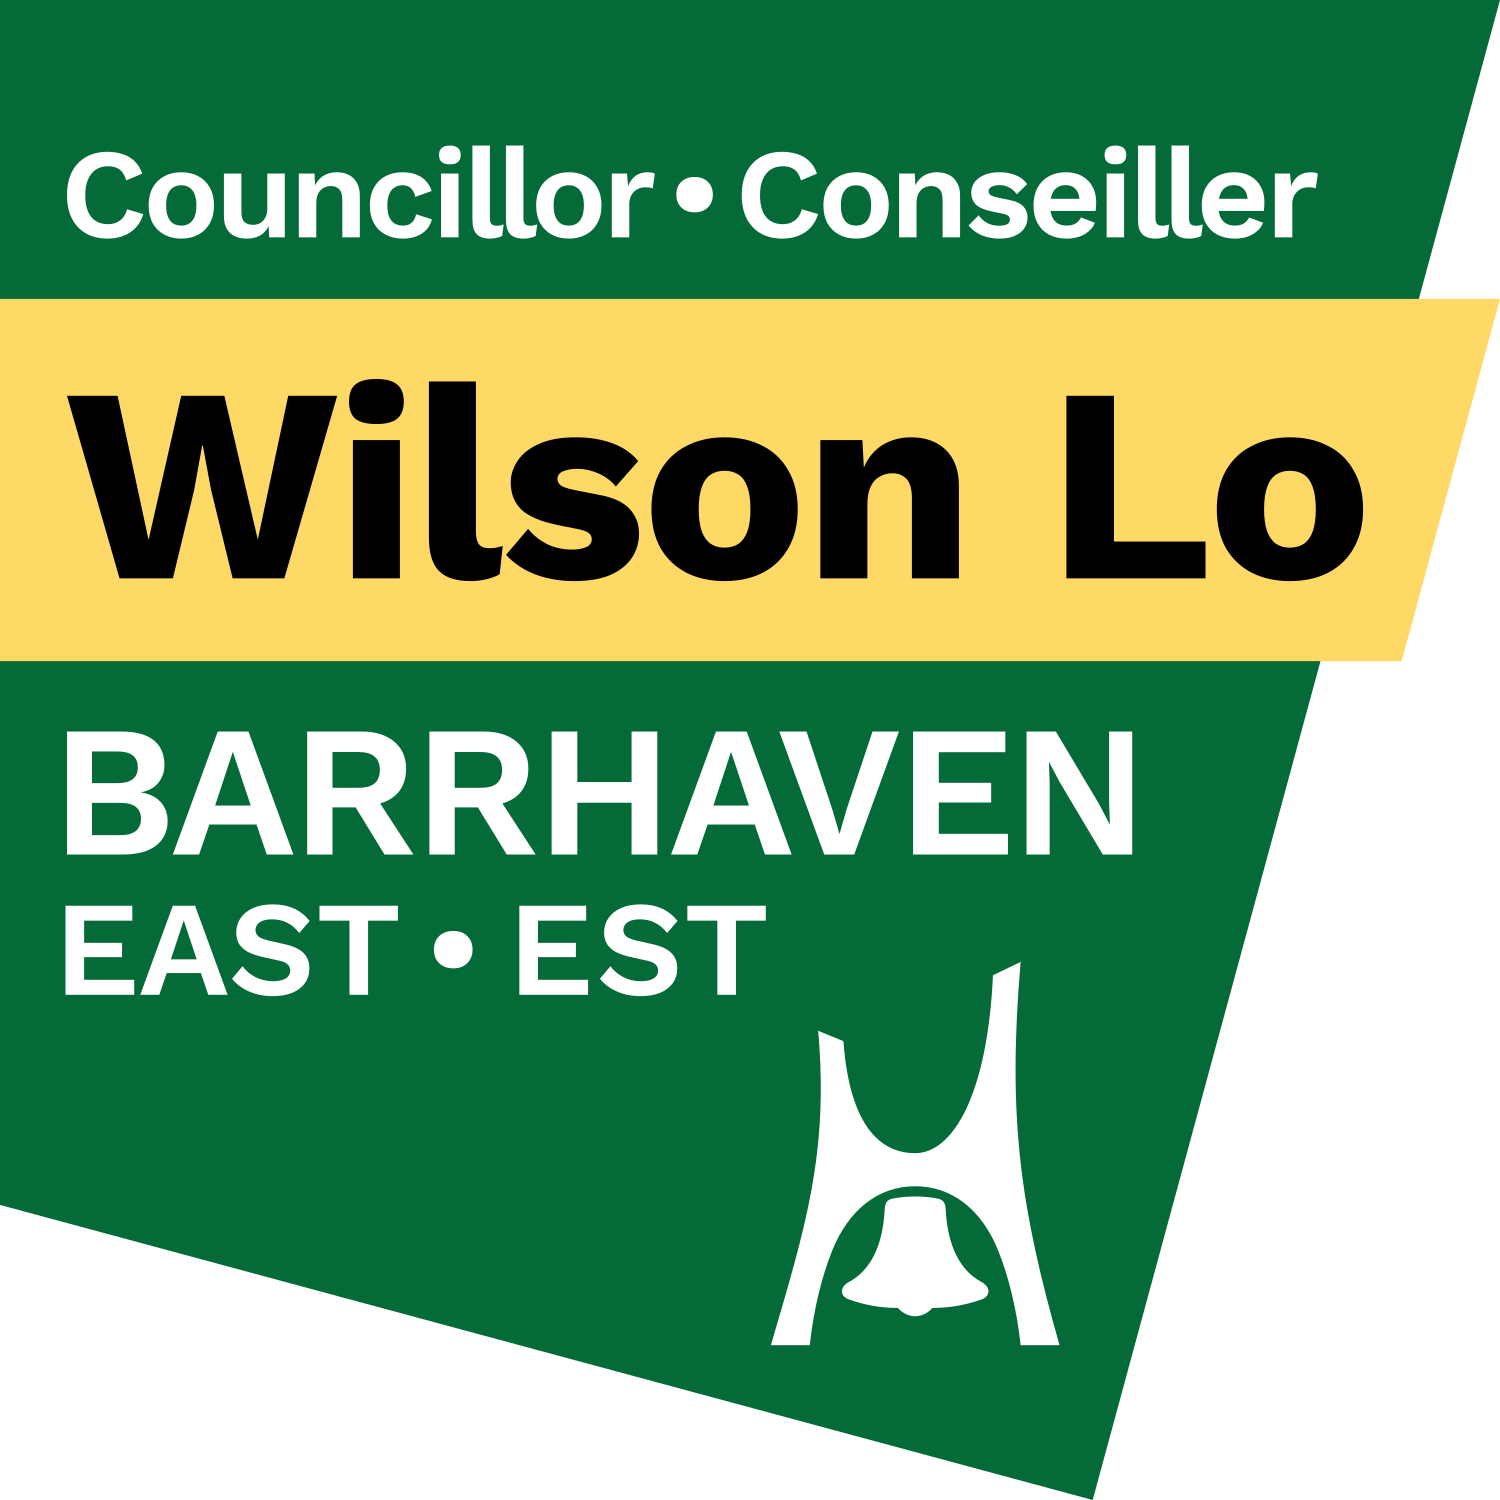 Councillor Wilson Lo - Ward 24